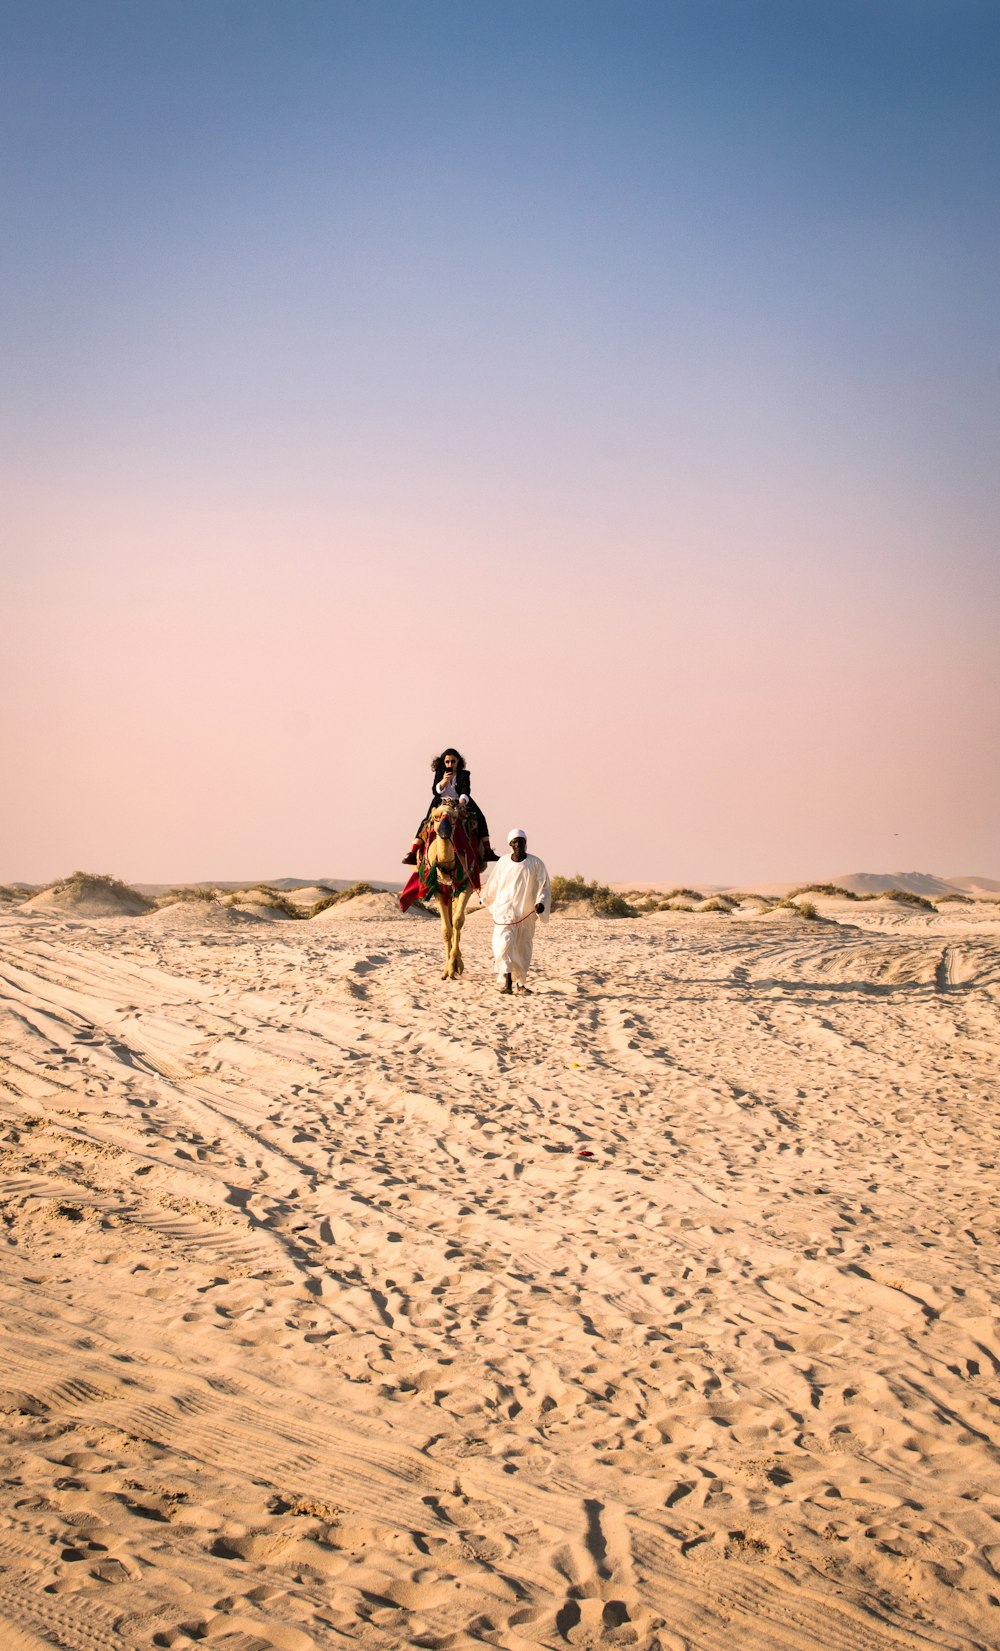 흰색 긴 소매 셔츠와 검은 바지를 입은 여자가 낮에 갈색 모래 위를 걷고 있다